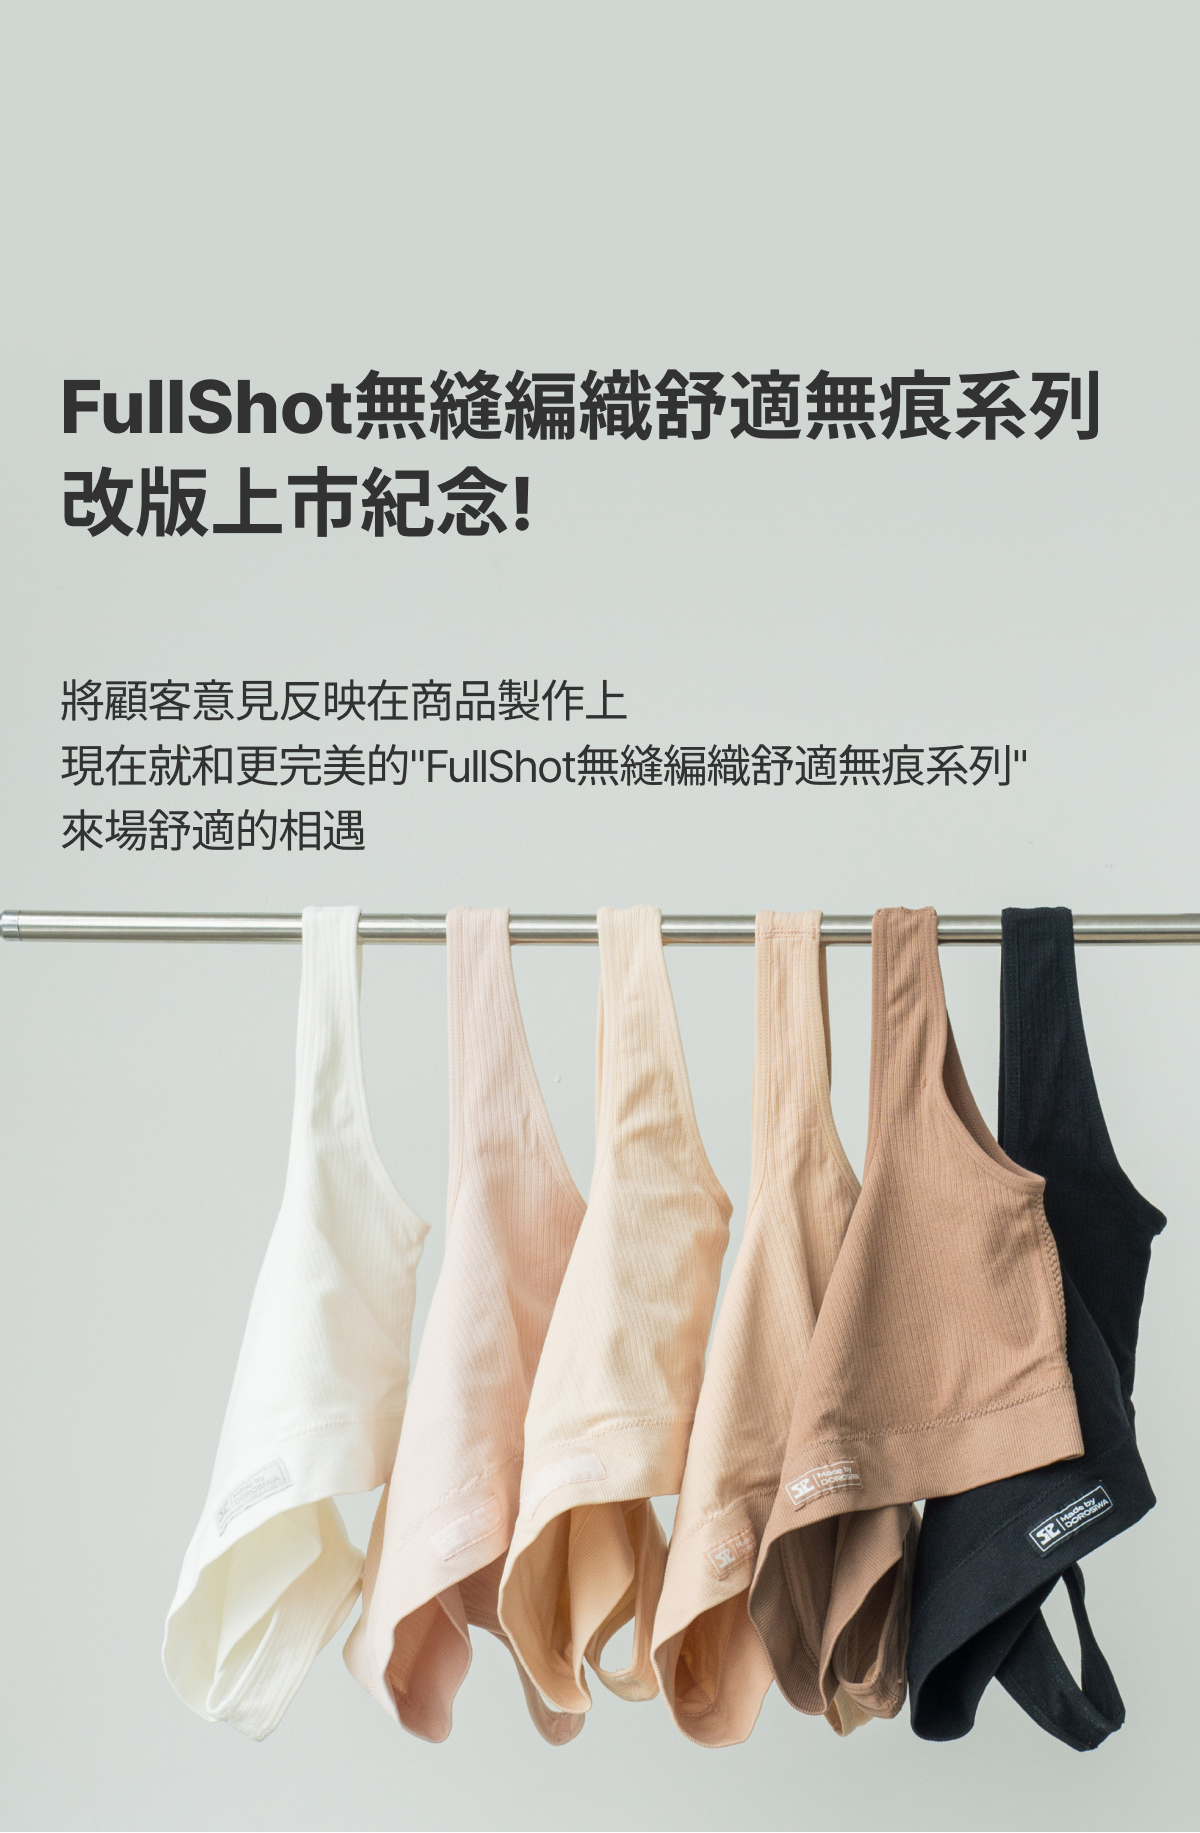 FullShot無縫編織舒適無痕系列改版上市紀念!